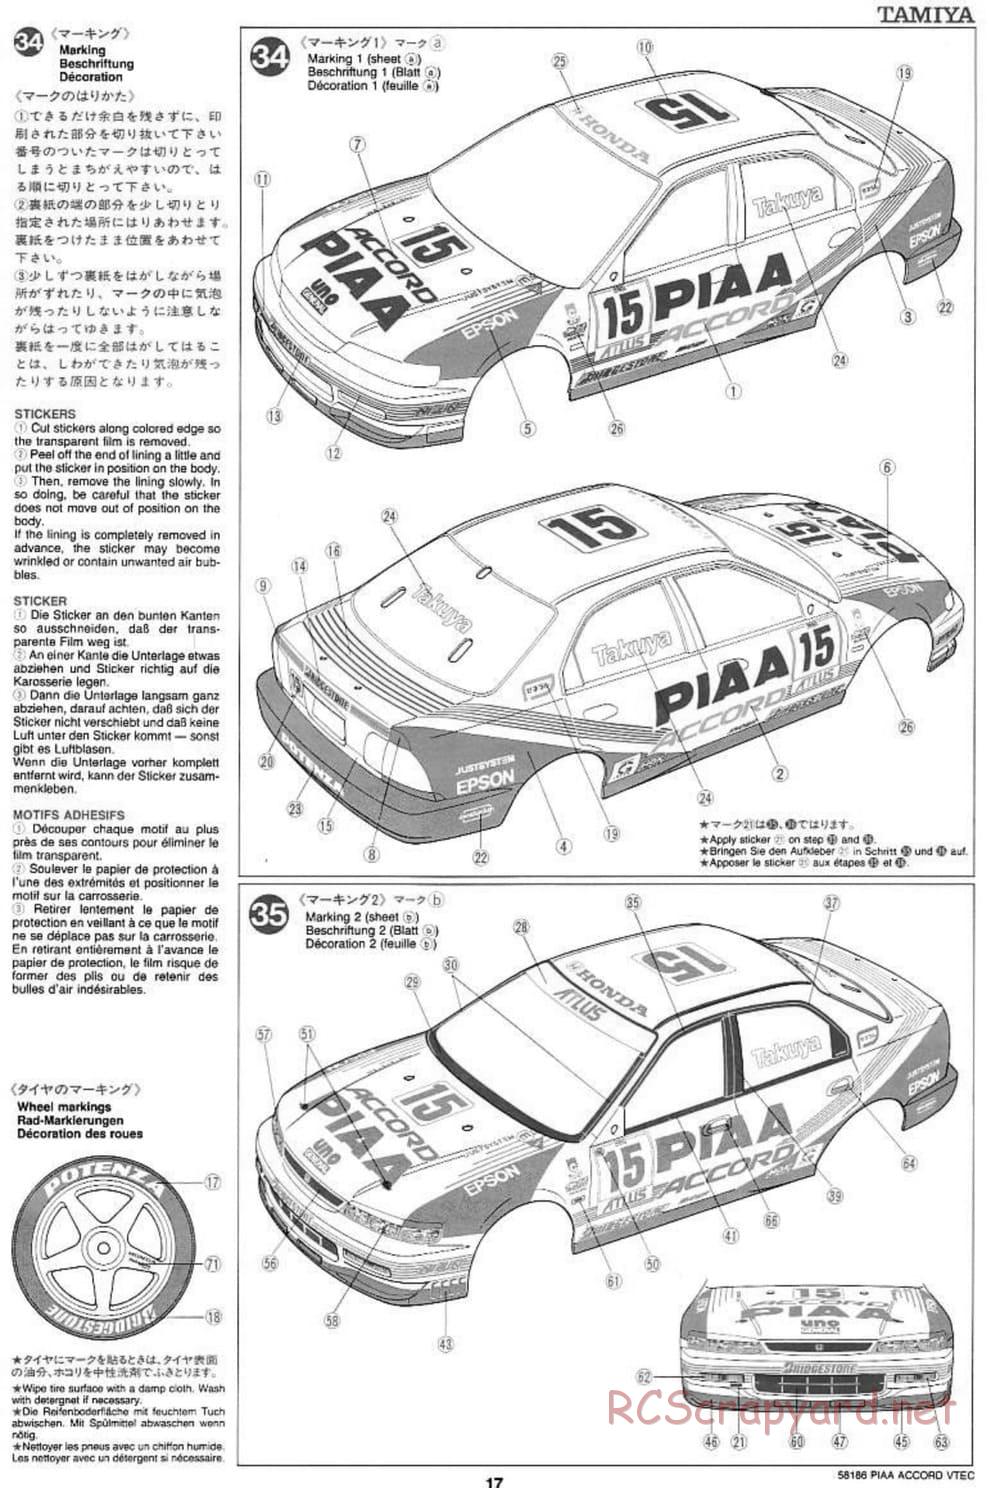 Tamiya - PIAA Accord VTEC - FF-01 Chassis - Manual - Page 17